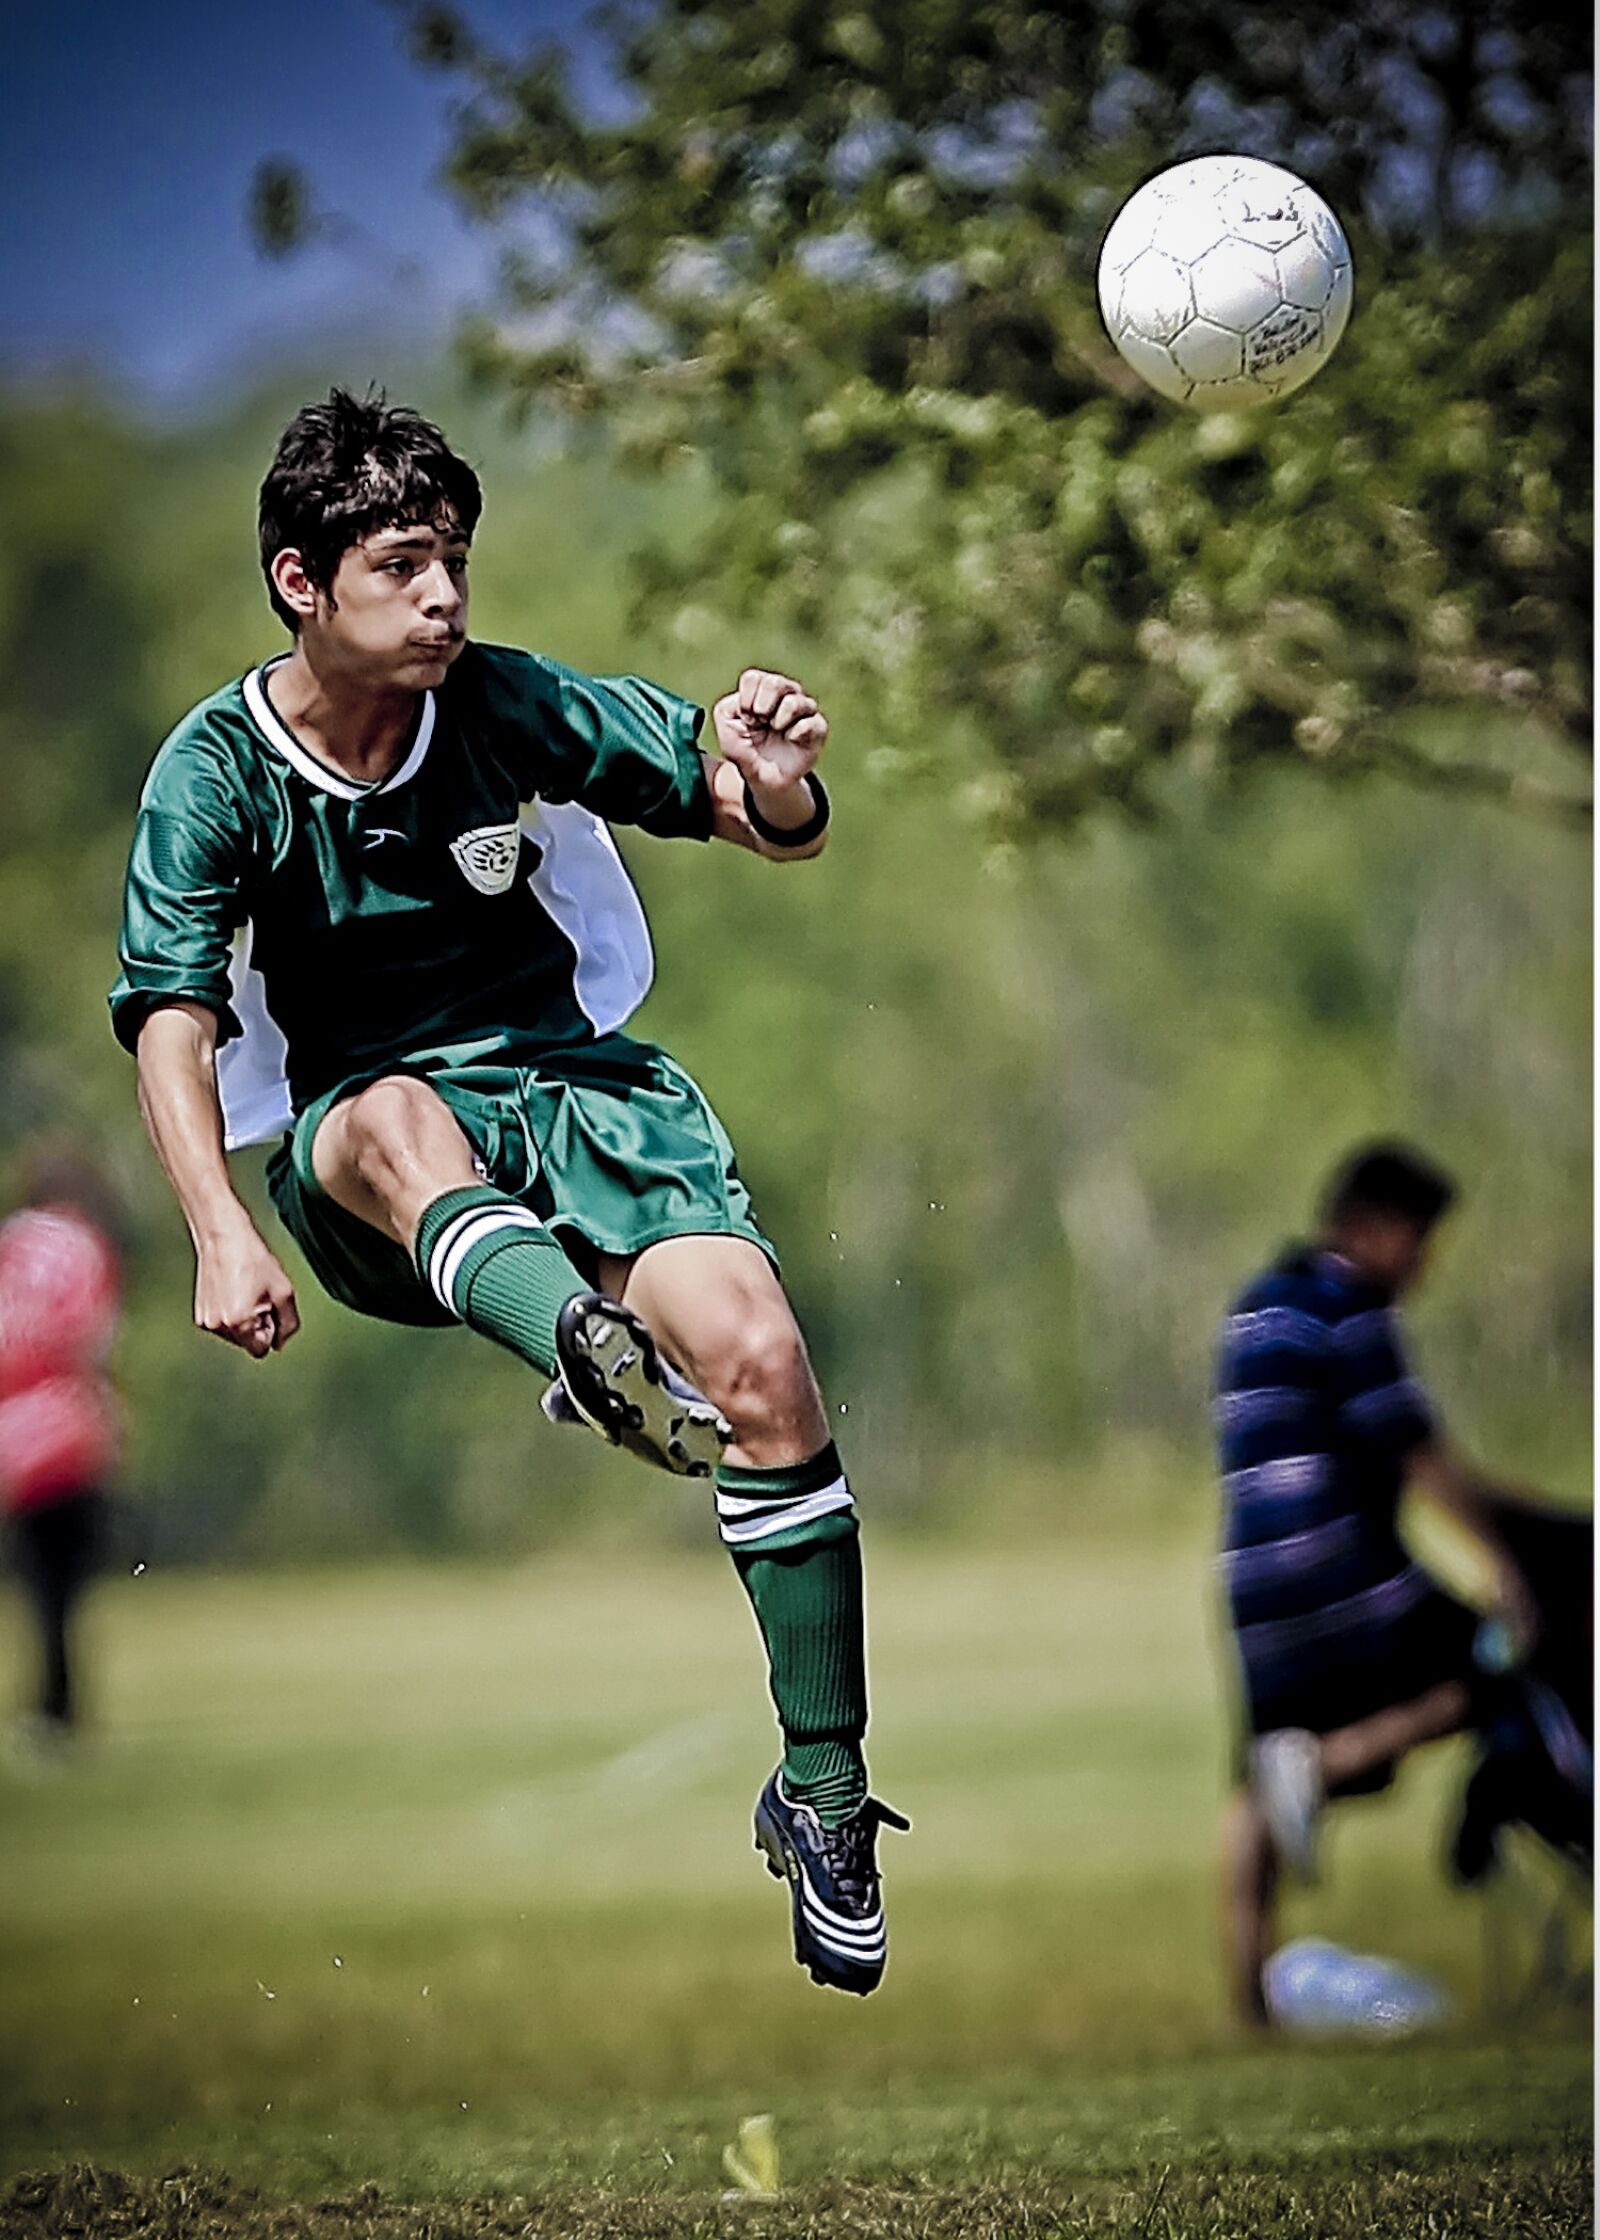 Canon EOS-1D Mark II N sample photo. Soccer, football, athlete photography